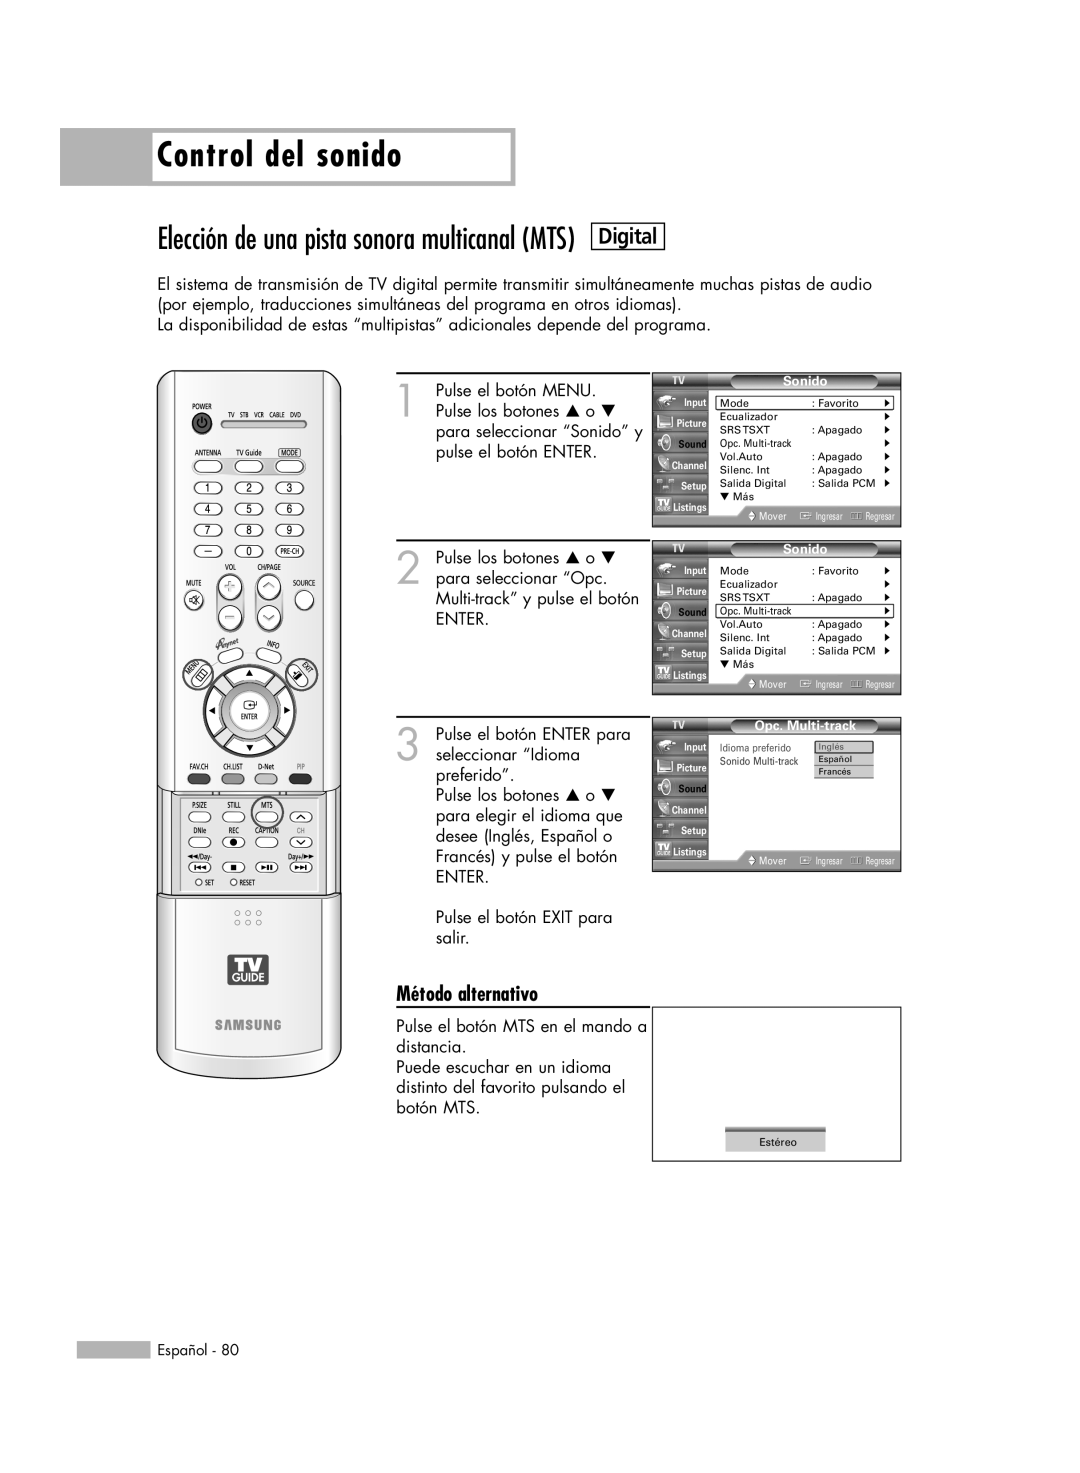 Samsung HL-R6178W, HL-R5078W Control del sonido, Elección de una pista sonora multicanal MTS, Digital, Método alternativo 